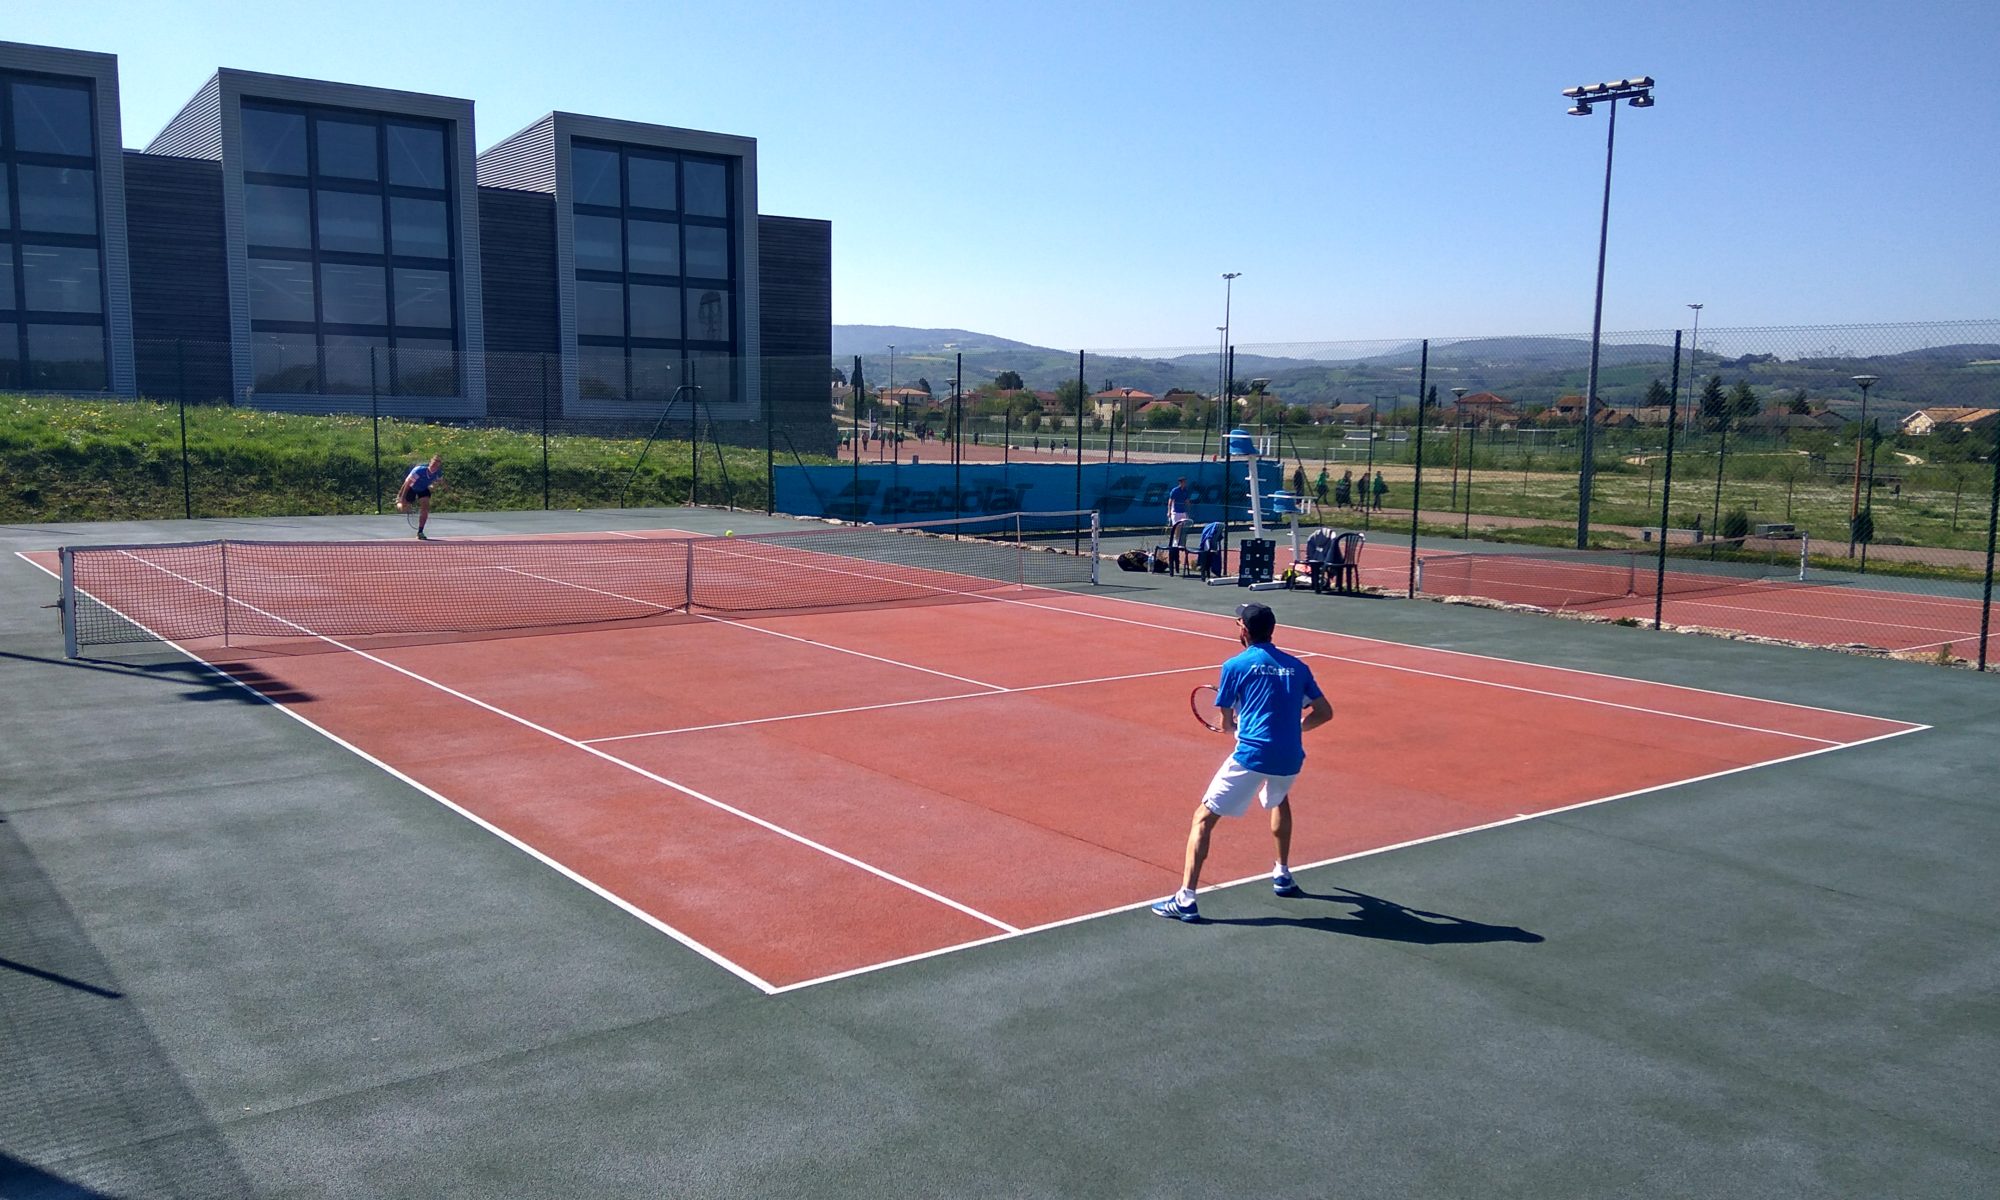 Tennis Club Chasse-sur-Rhône